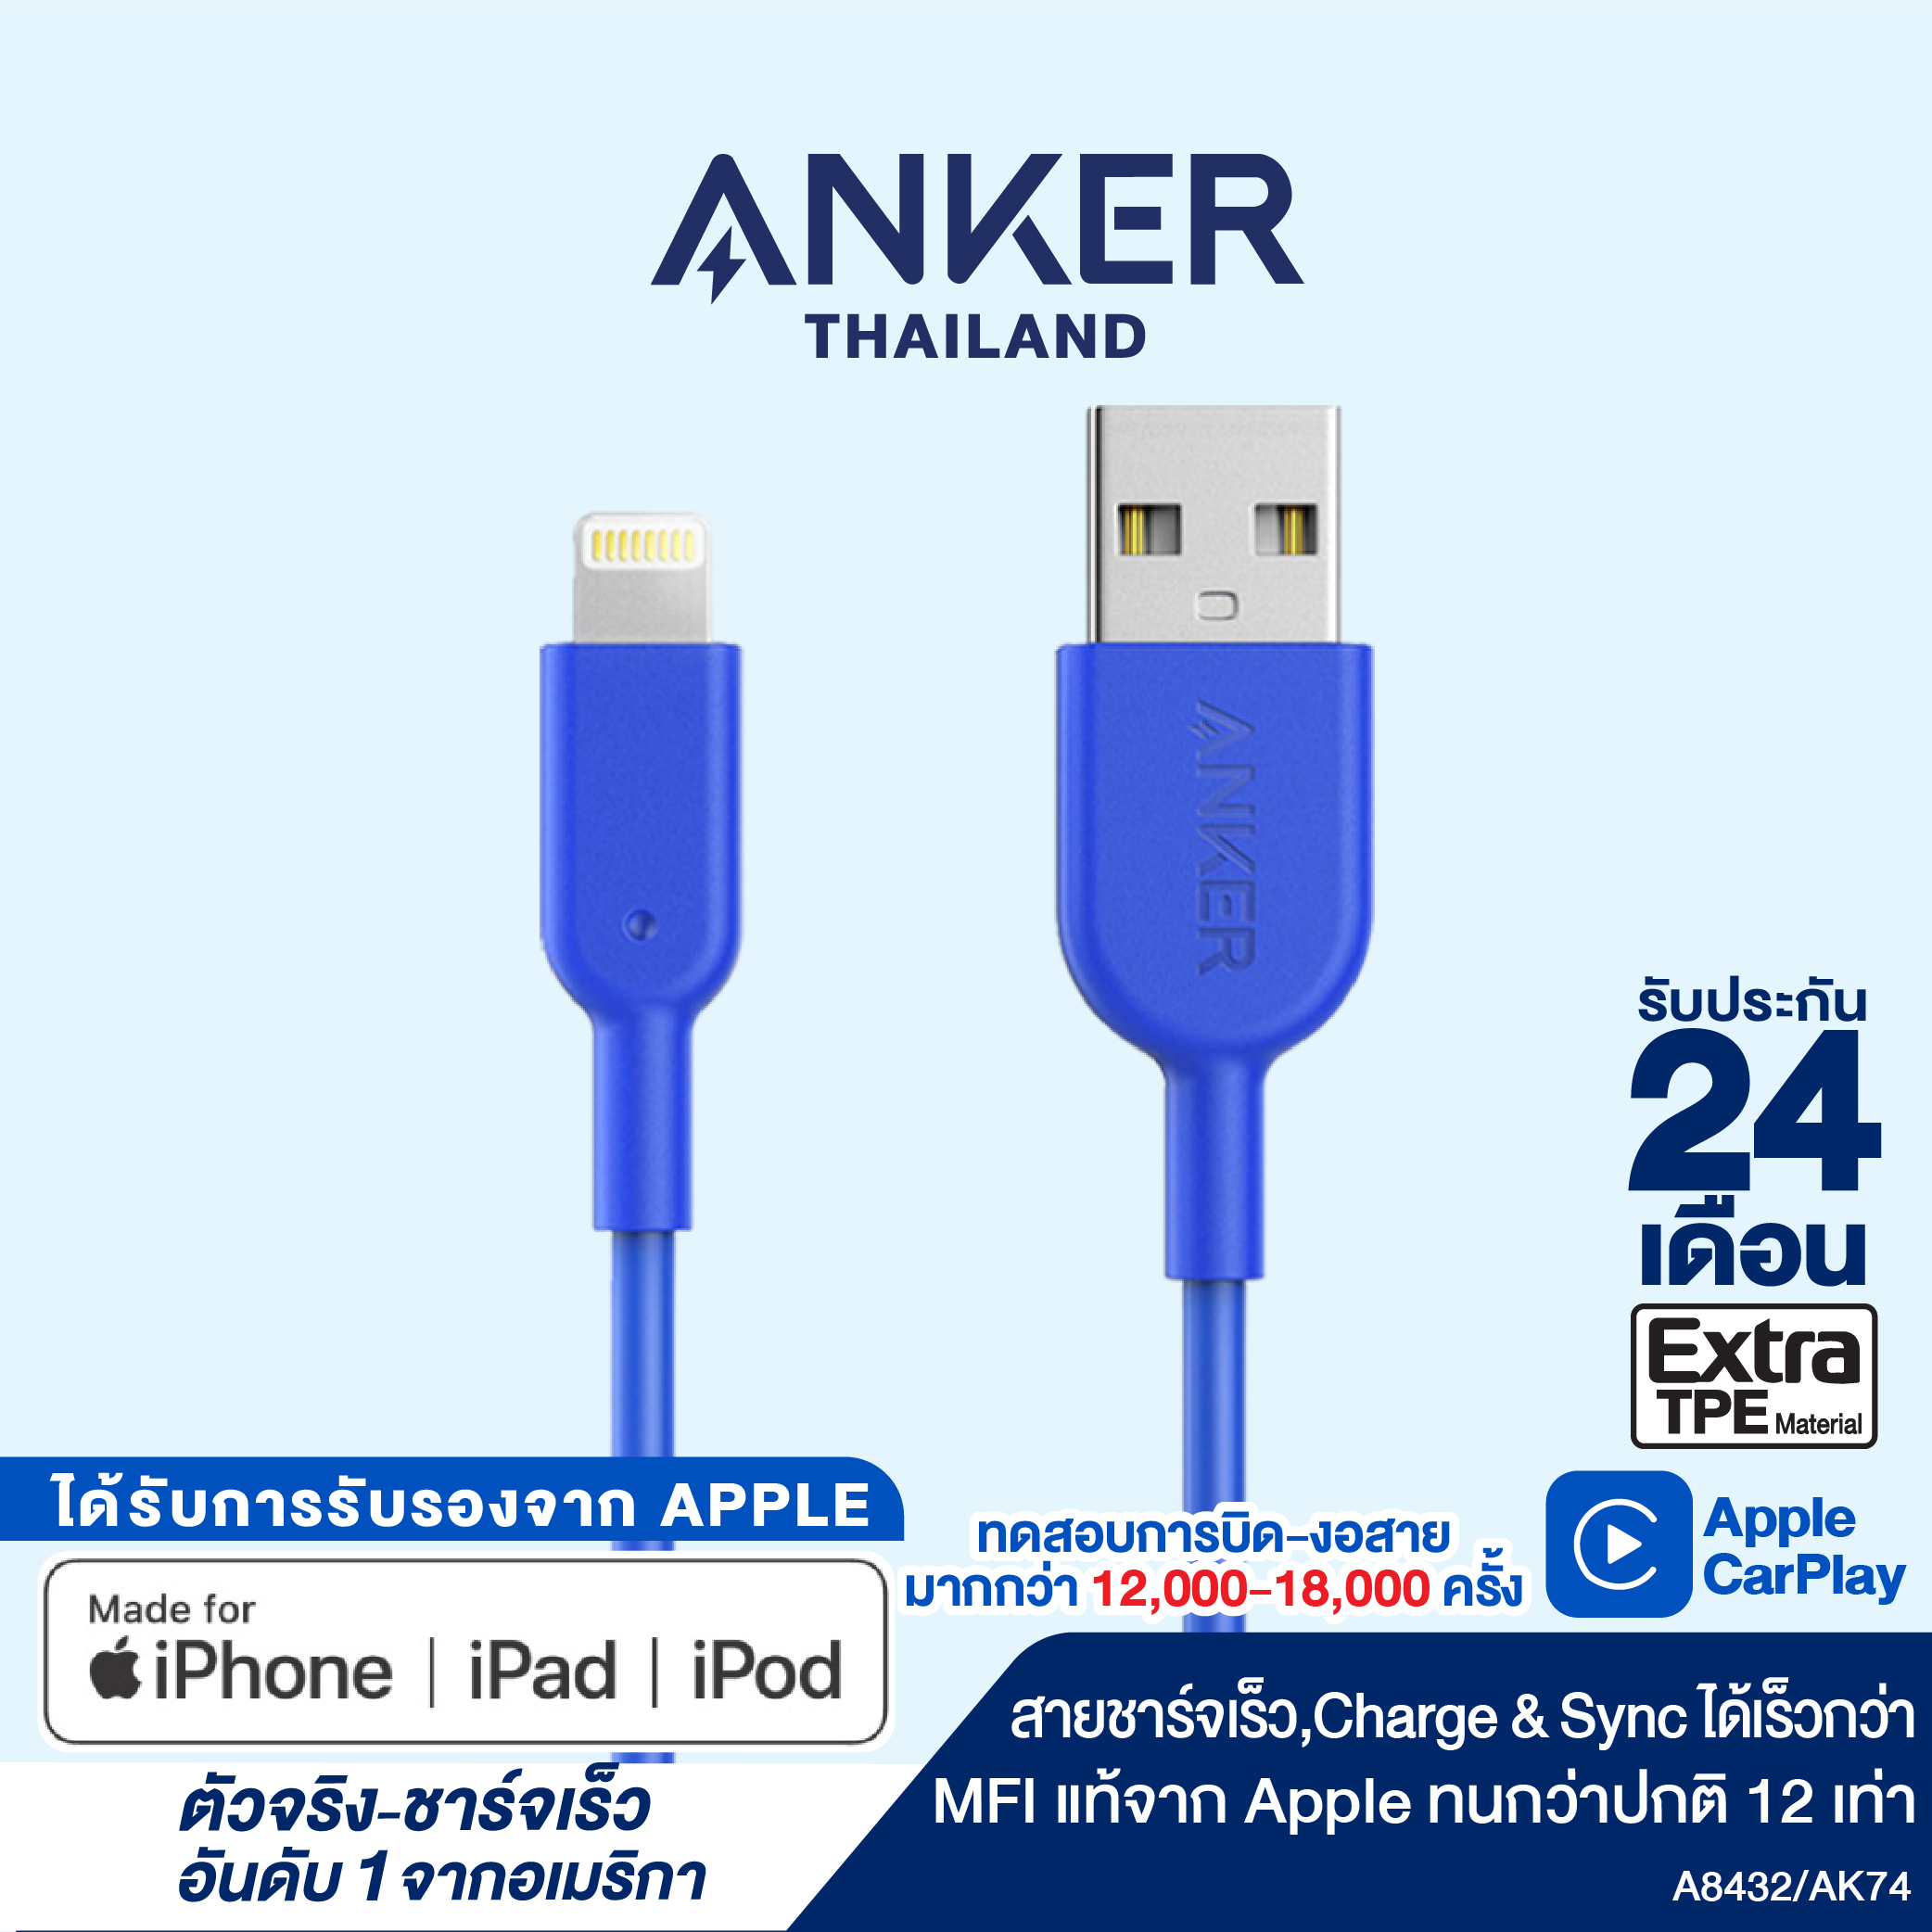 สายชาร์จ Anker Powerline II with lightning connector 90cm (3ft) สายชาร์จไอโฟน สายแท้ ชาร์จเร็ว ได้รับมาตรฐาน MFi จาก Apple สายหุ้มด้วยวัสดุไฟเบอร์กันกระสุน แข็งแรงทนทาน